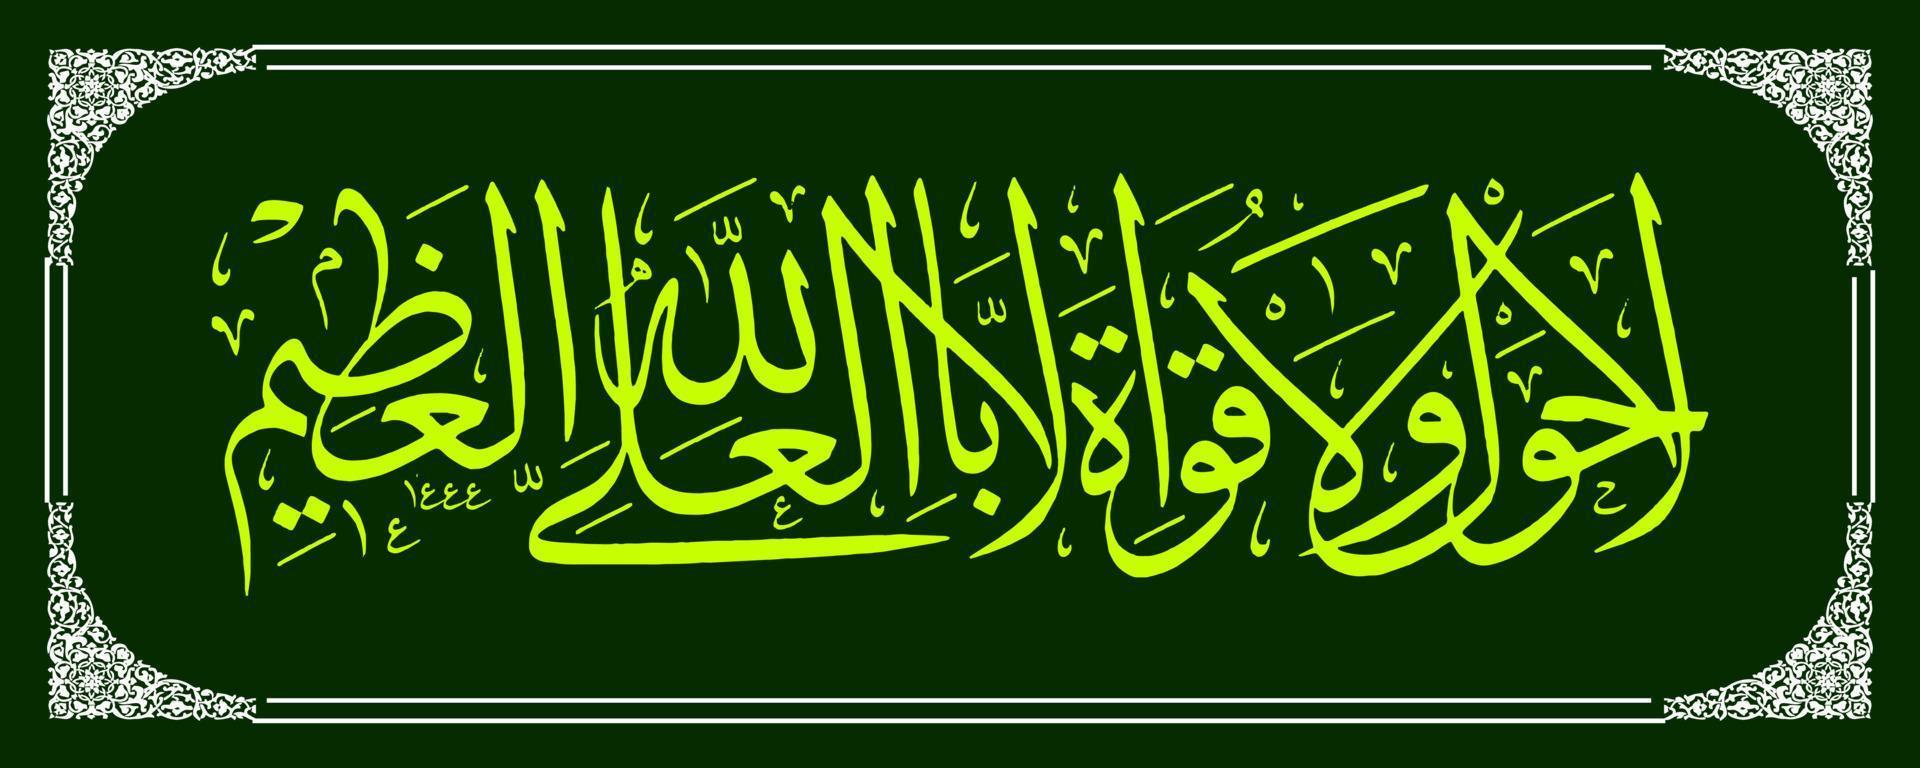 caligrafia árabe, tradução do Alcorão, não há poder e esforço, exceto pelo poder de Allah, o Altíssimo, o Maior. vetor